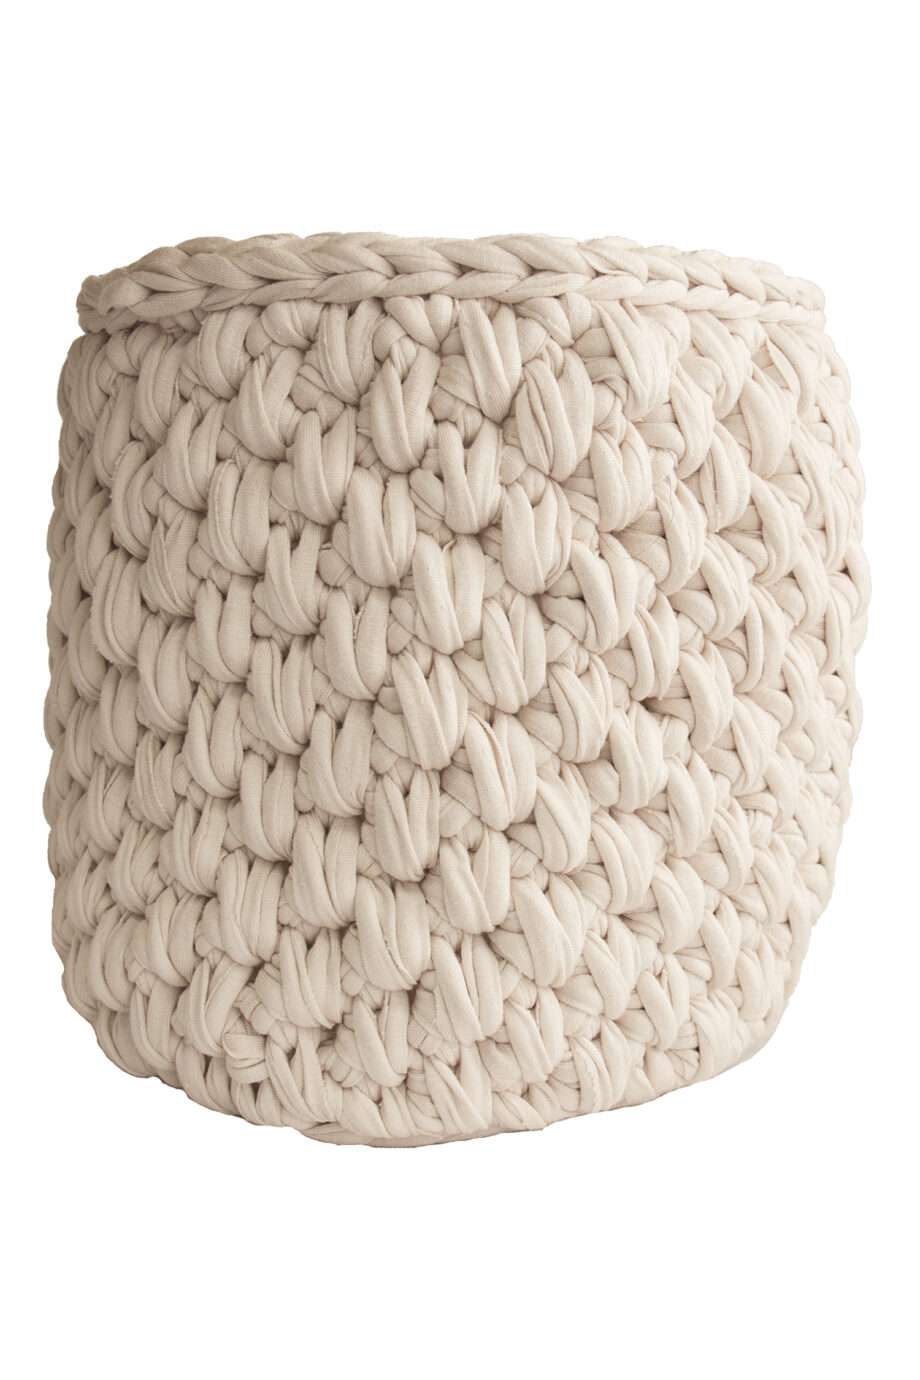 peony blush rose crochet cotton basket small